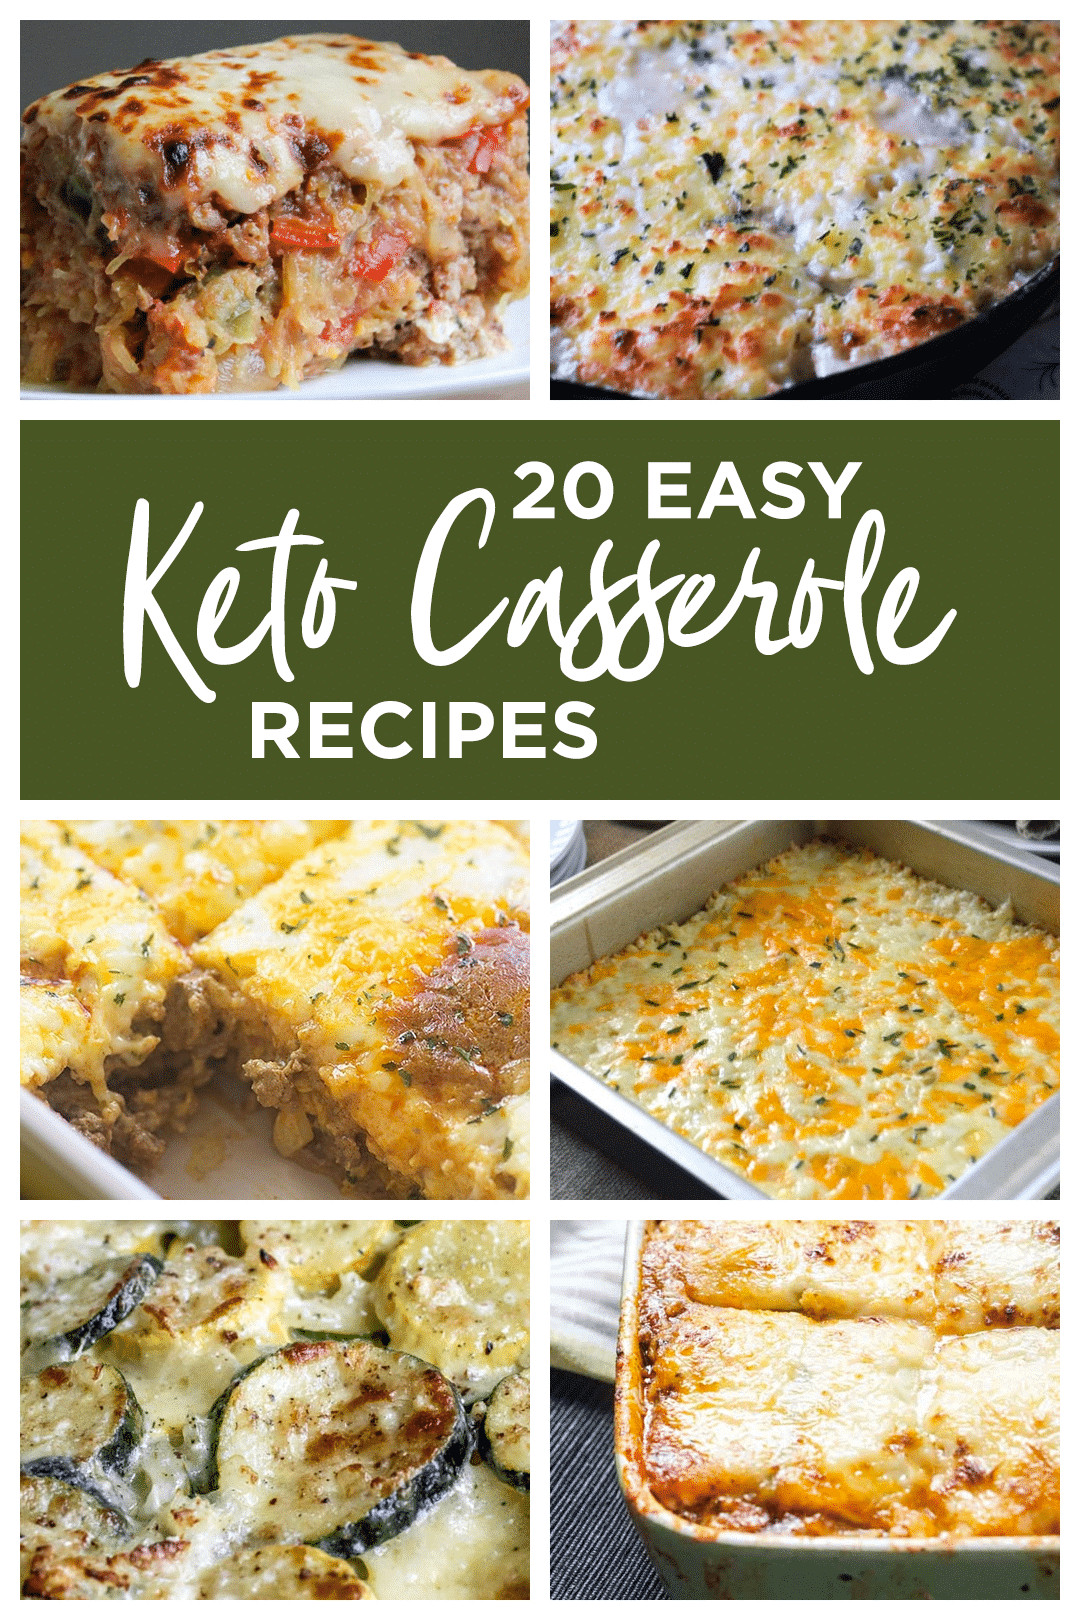 Easy Keto Casserole Recipes
 20 Easy Keto Casserole Recipes low carb friendly